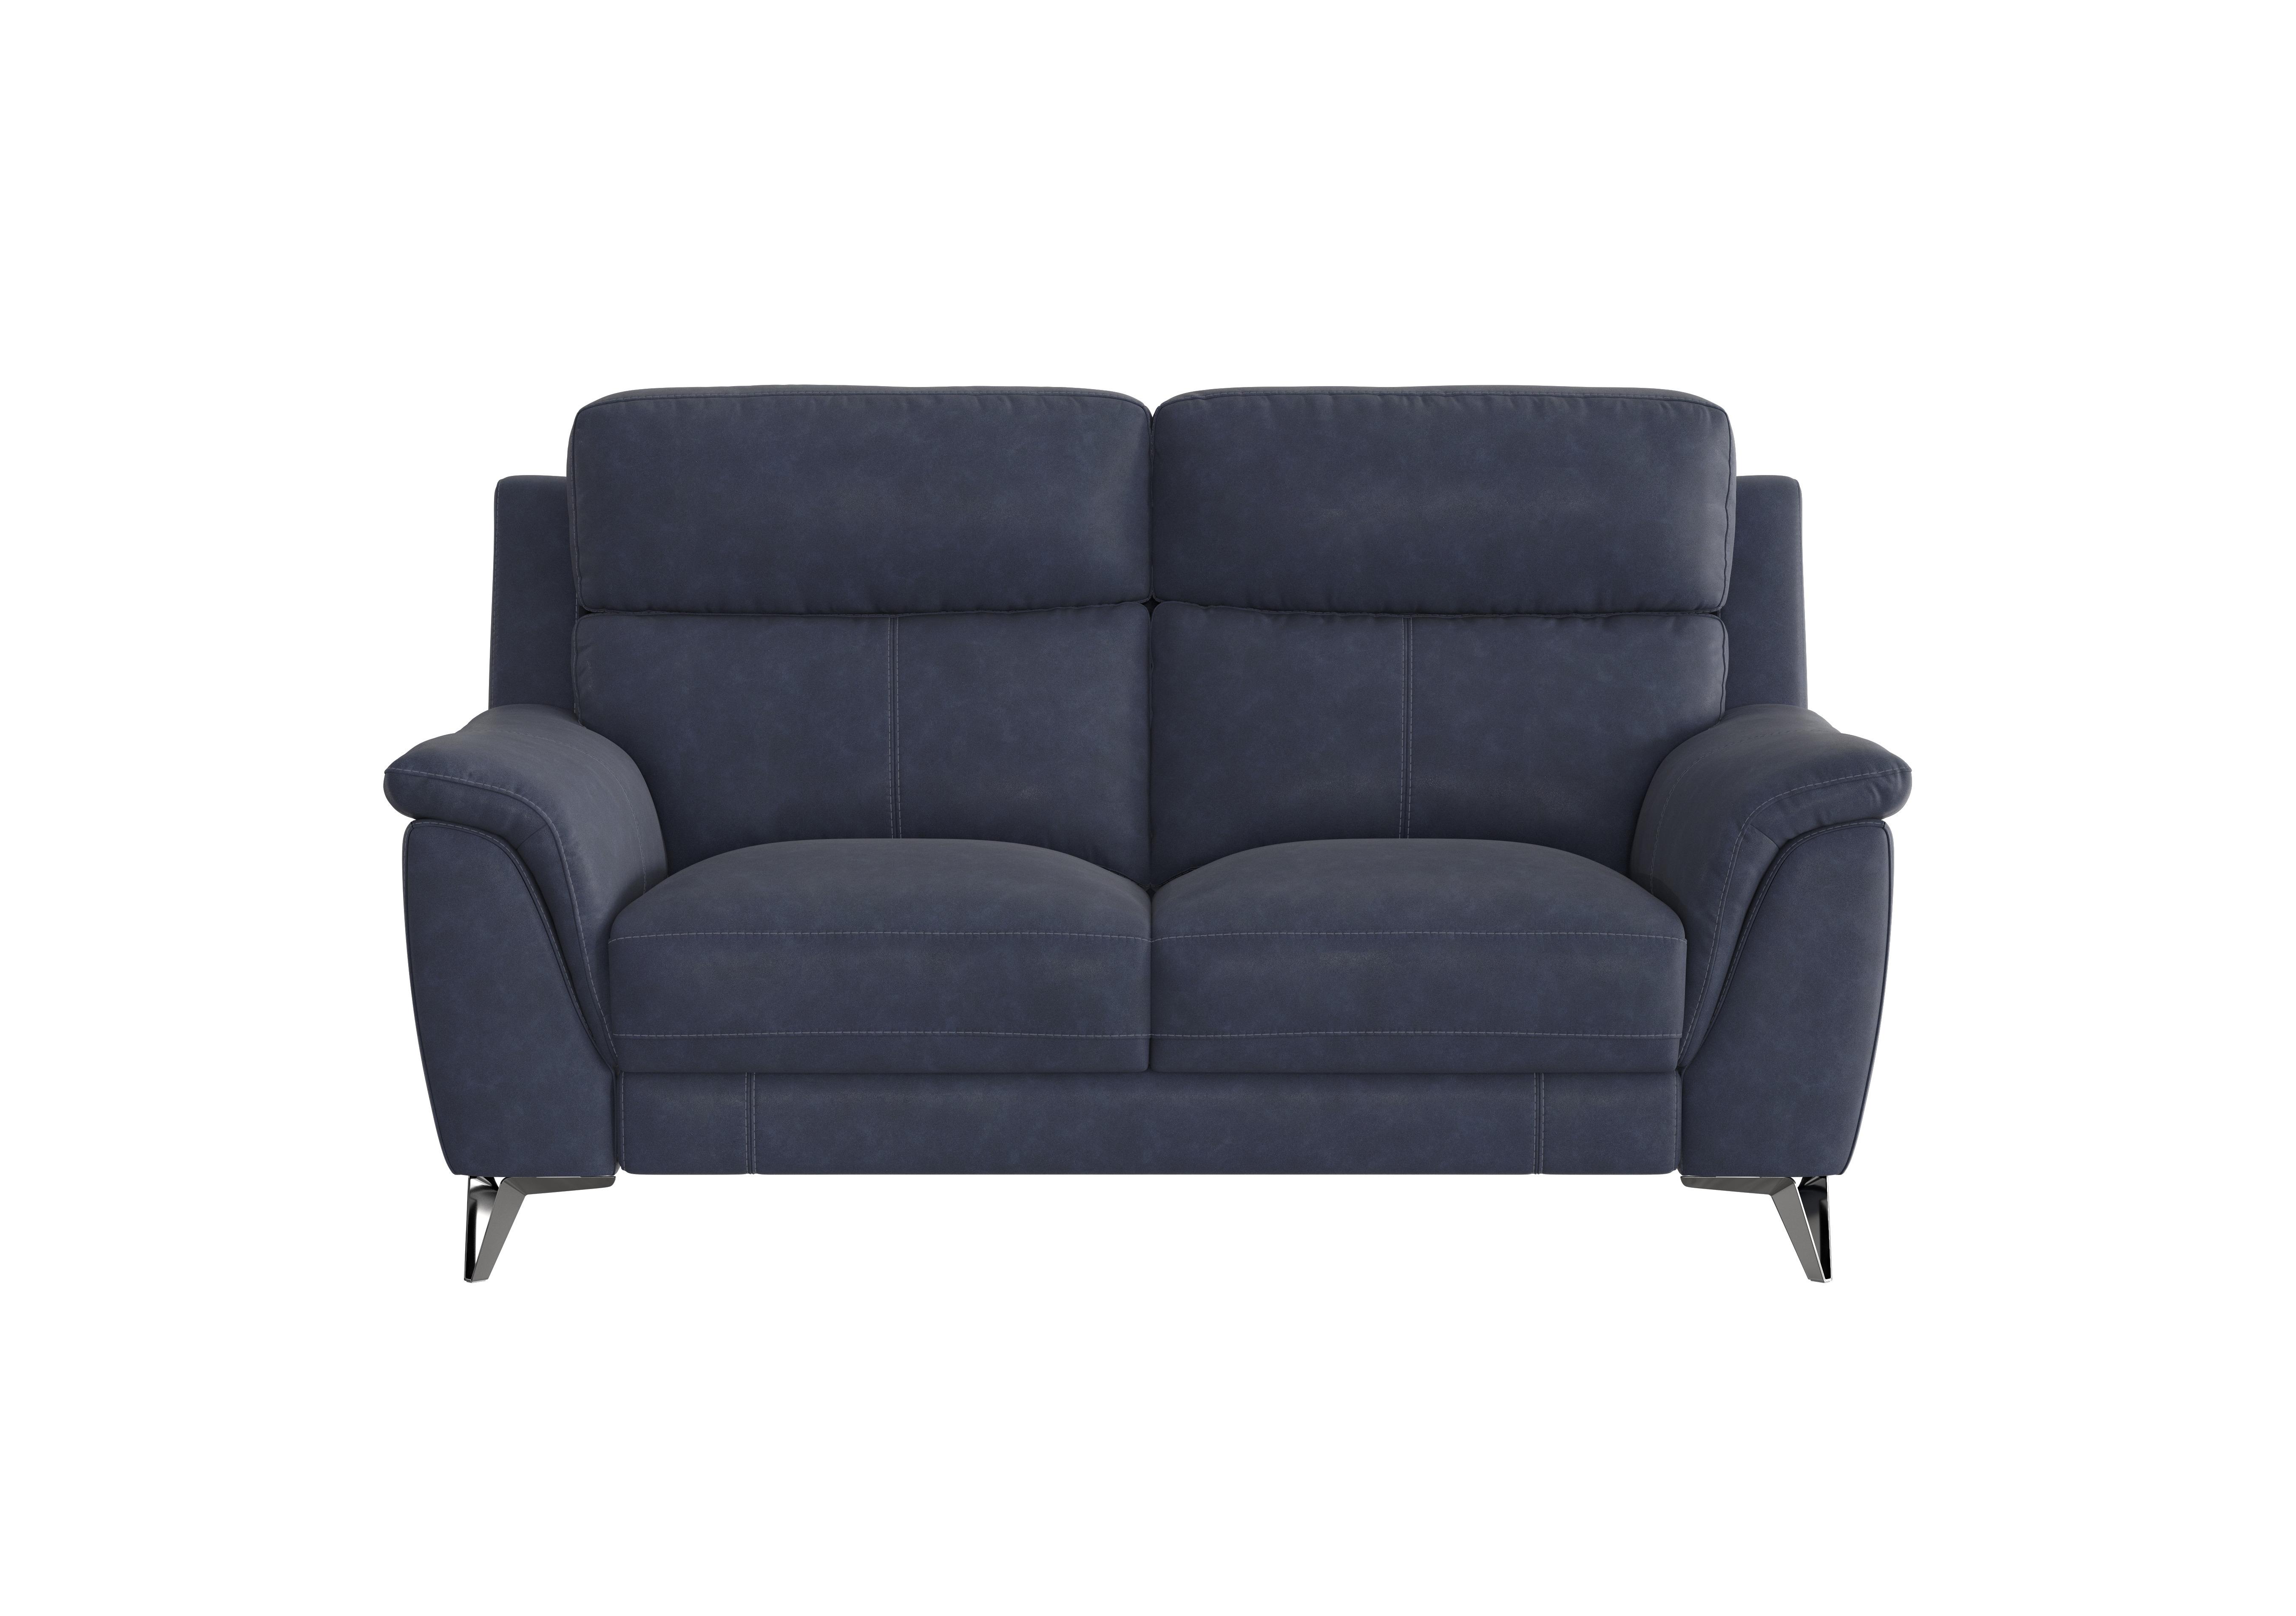 Contempo 2 Seater Fabric Sofa in Bfa-Ori-R23 Blue on Furniture Village